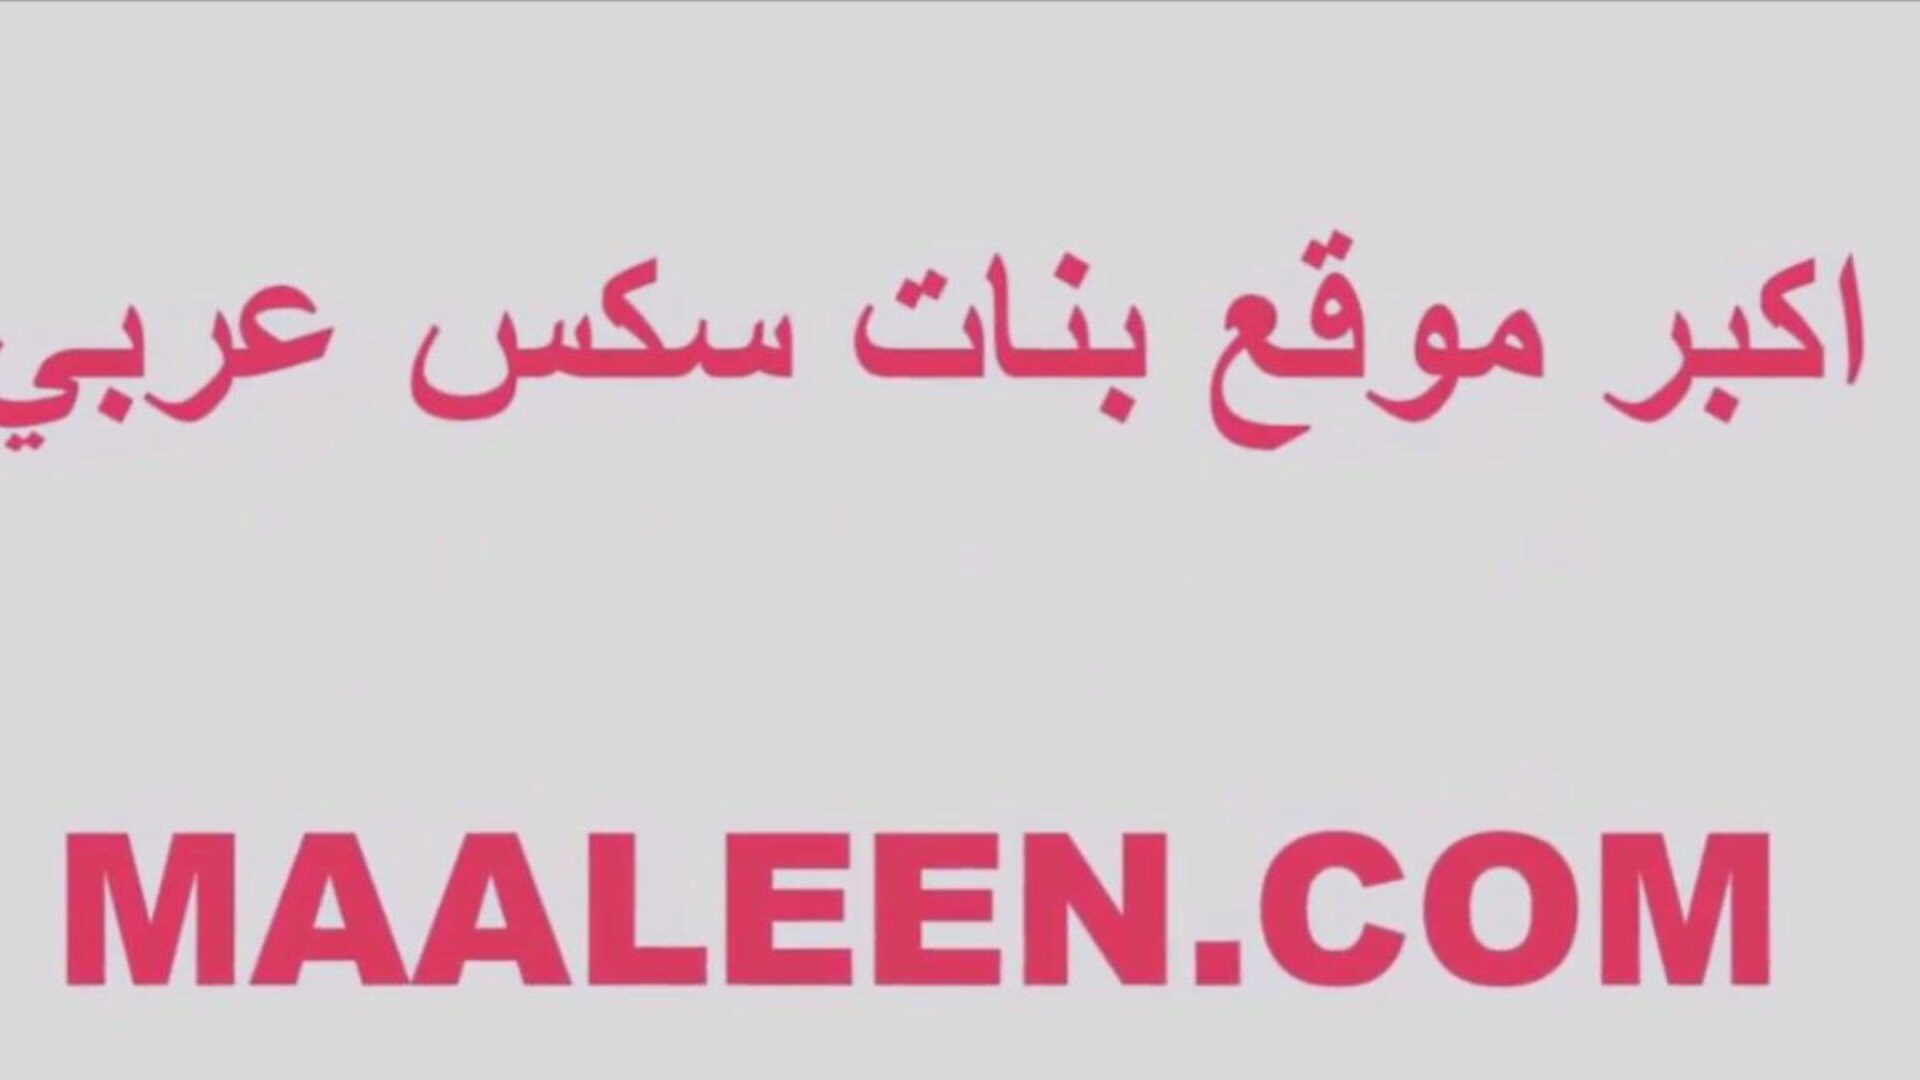 αραβικό σεξ bbw δωρεάν έφηβος hd porn βίντεο d8